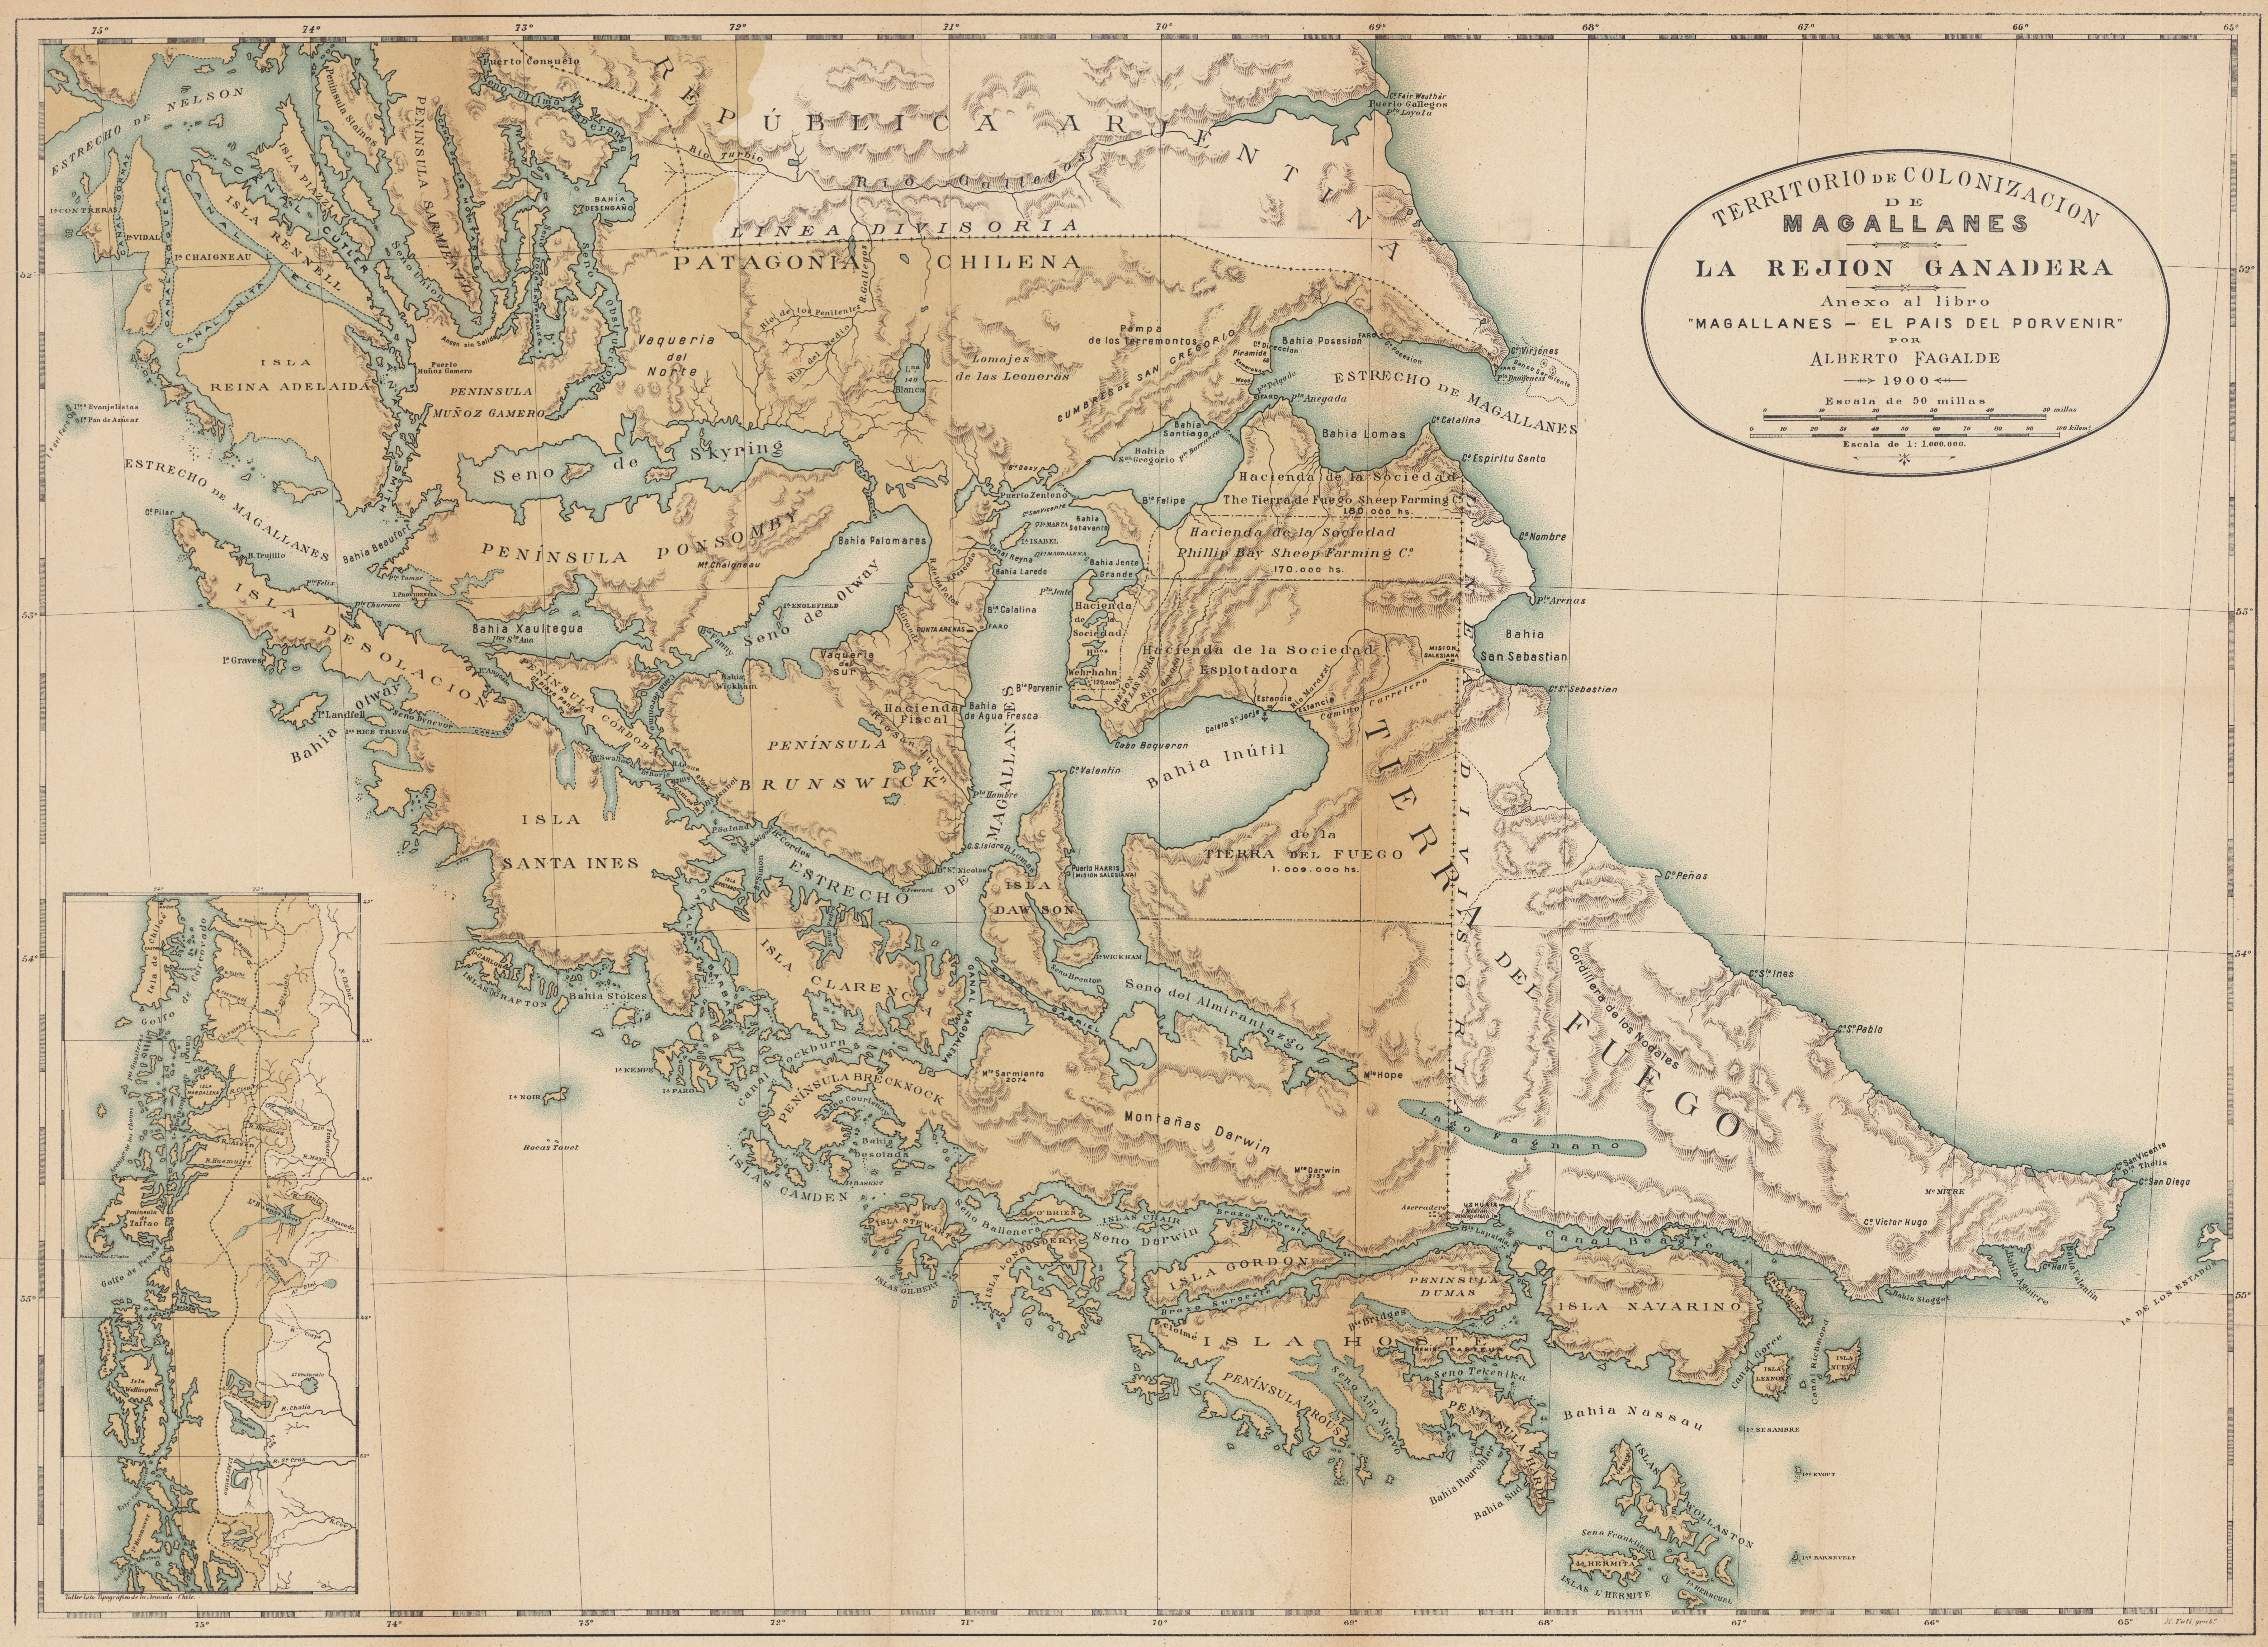 Territorio de colonización de Magallanes